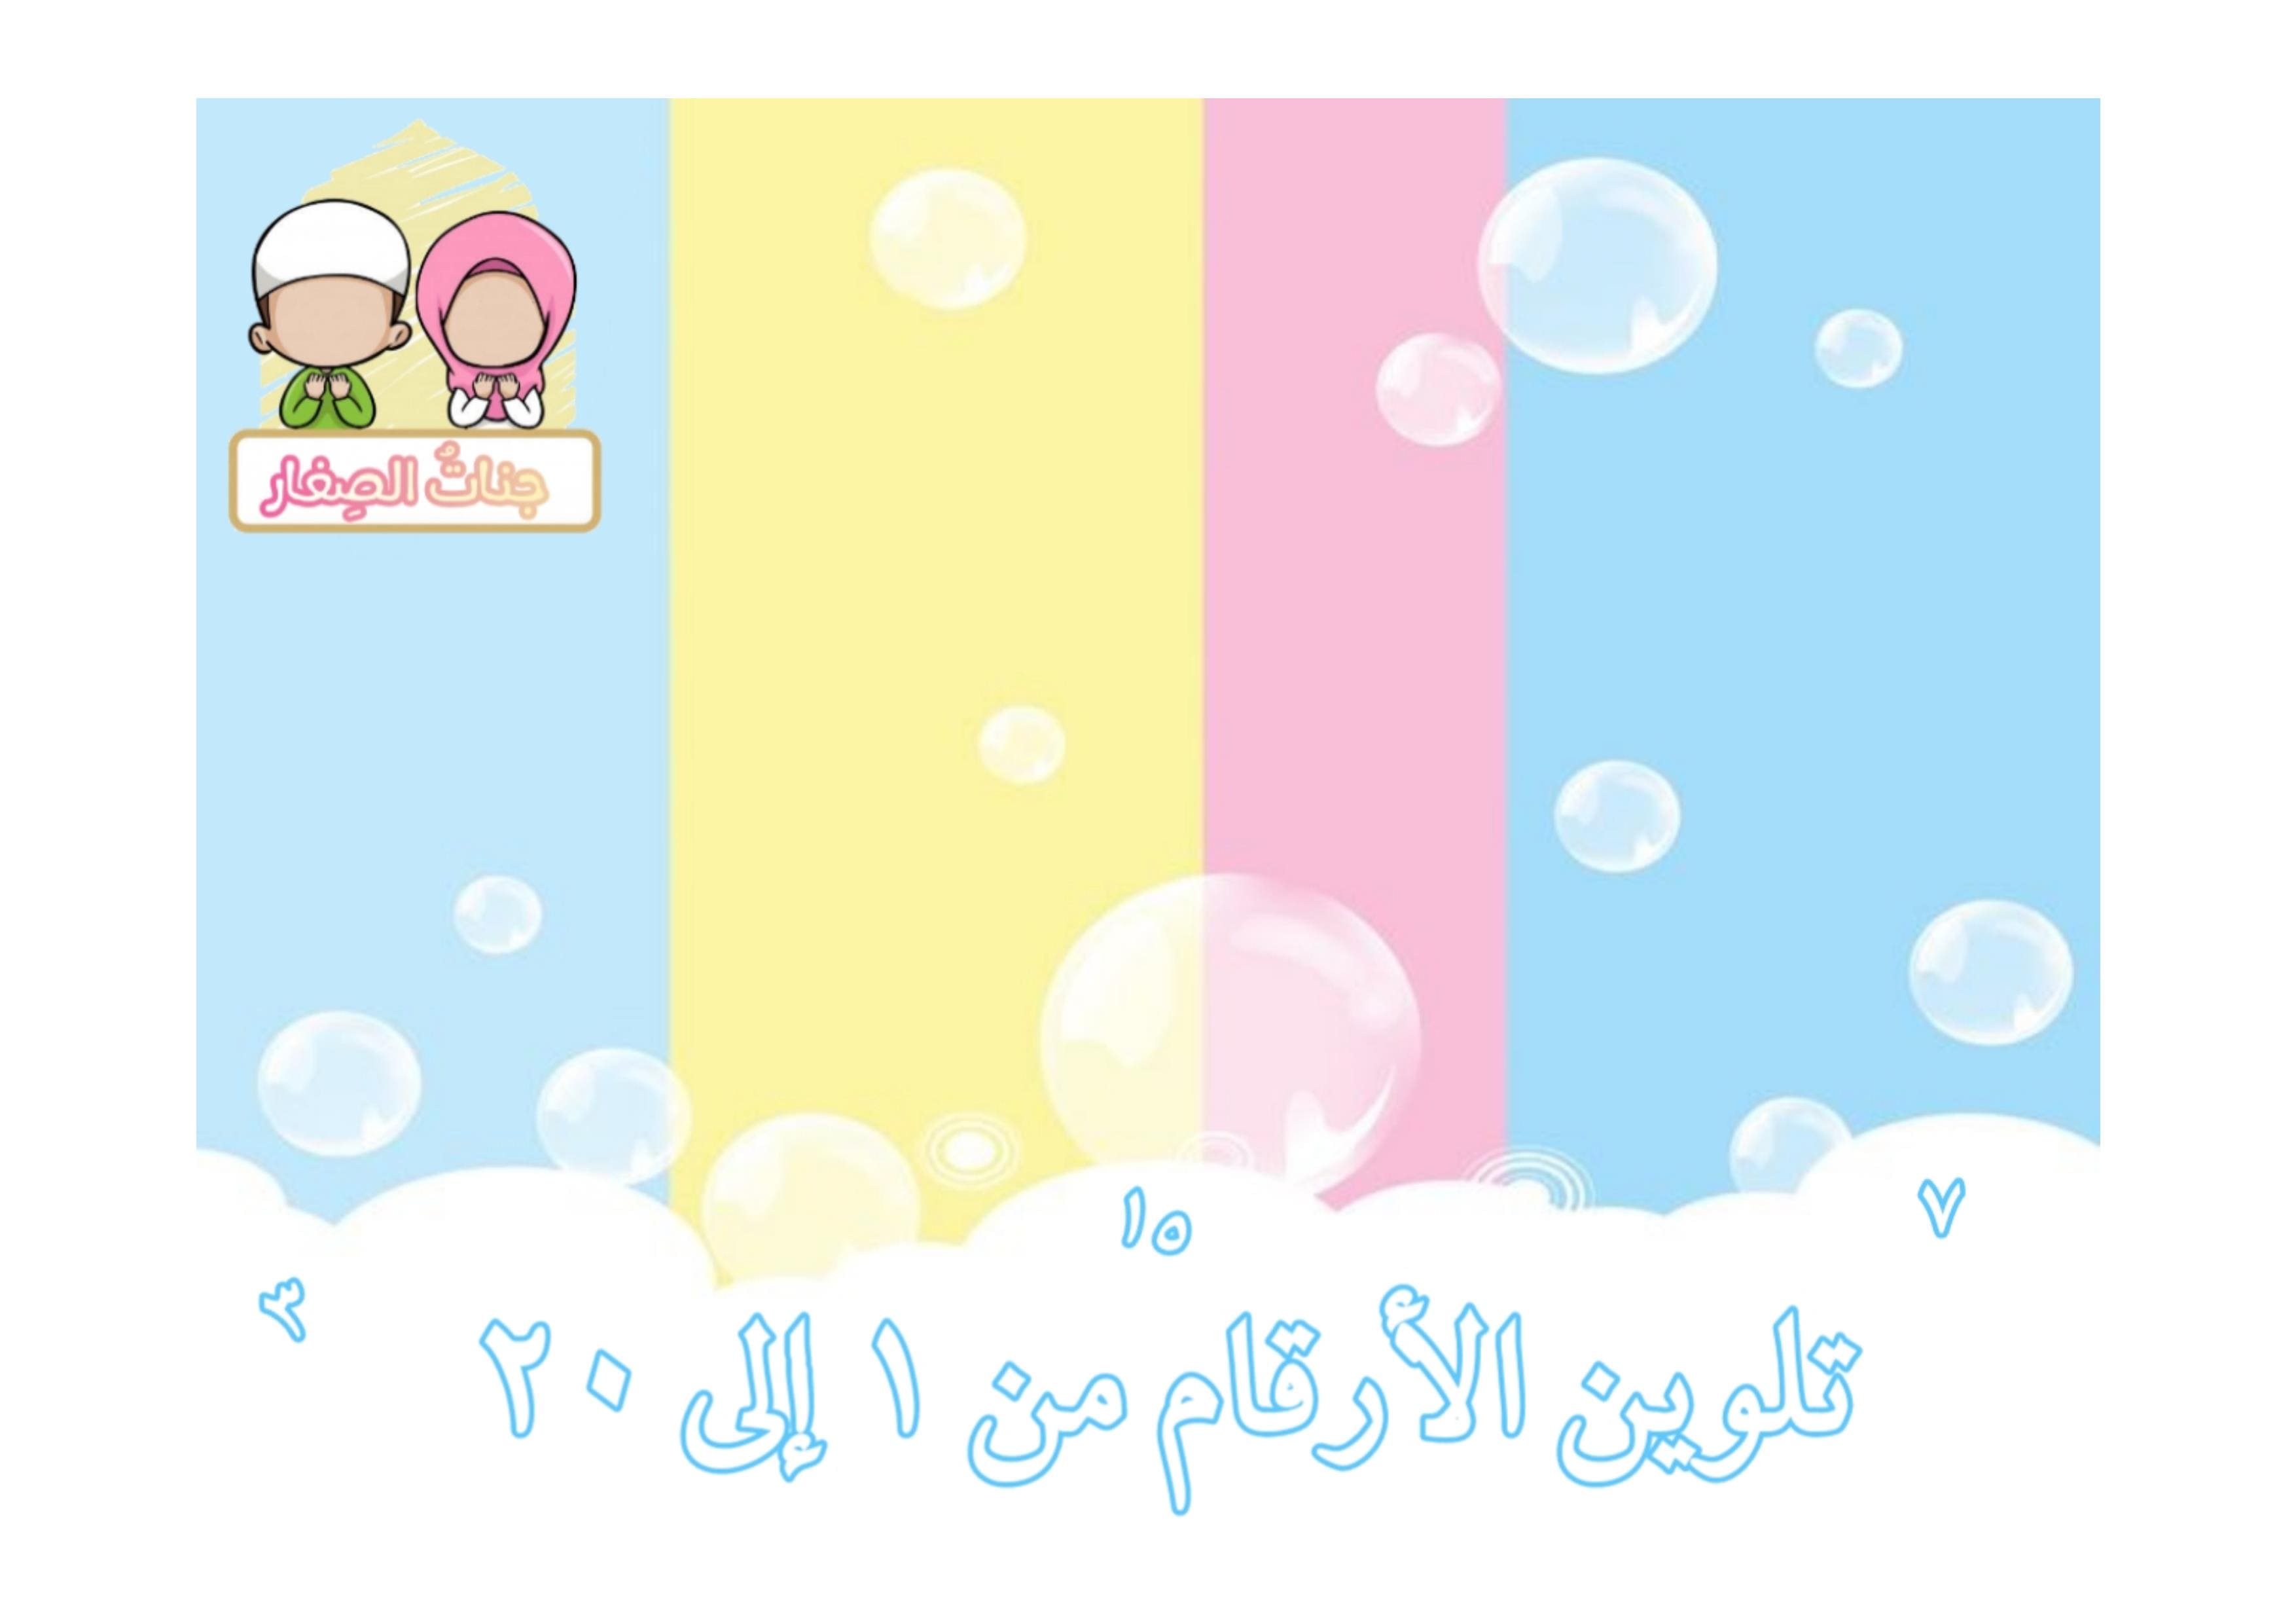 تعليم الاطفال الارقام العربية بطريقة ممتعة للاطفال عن طريق التلوين